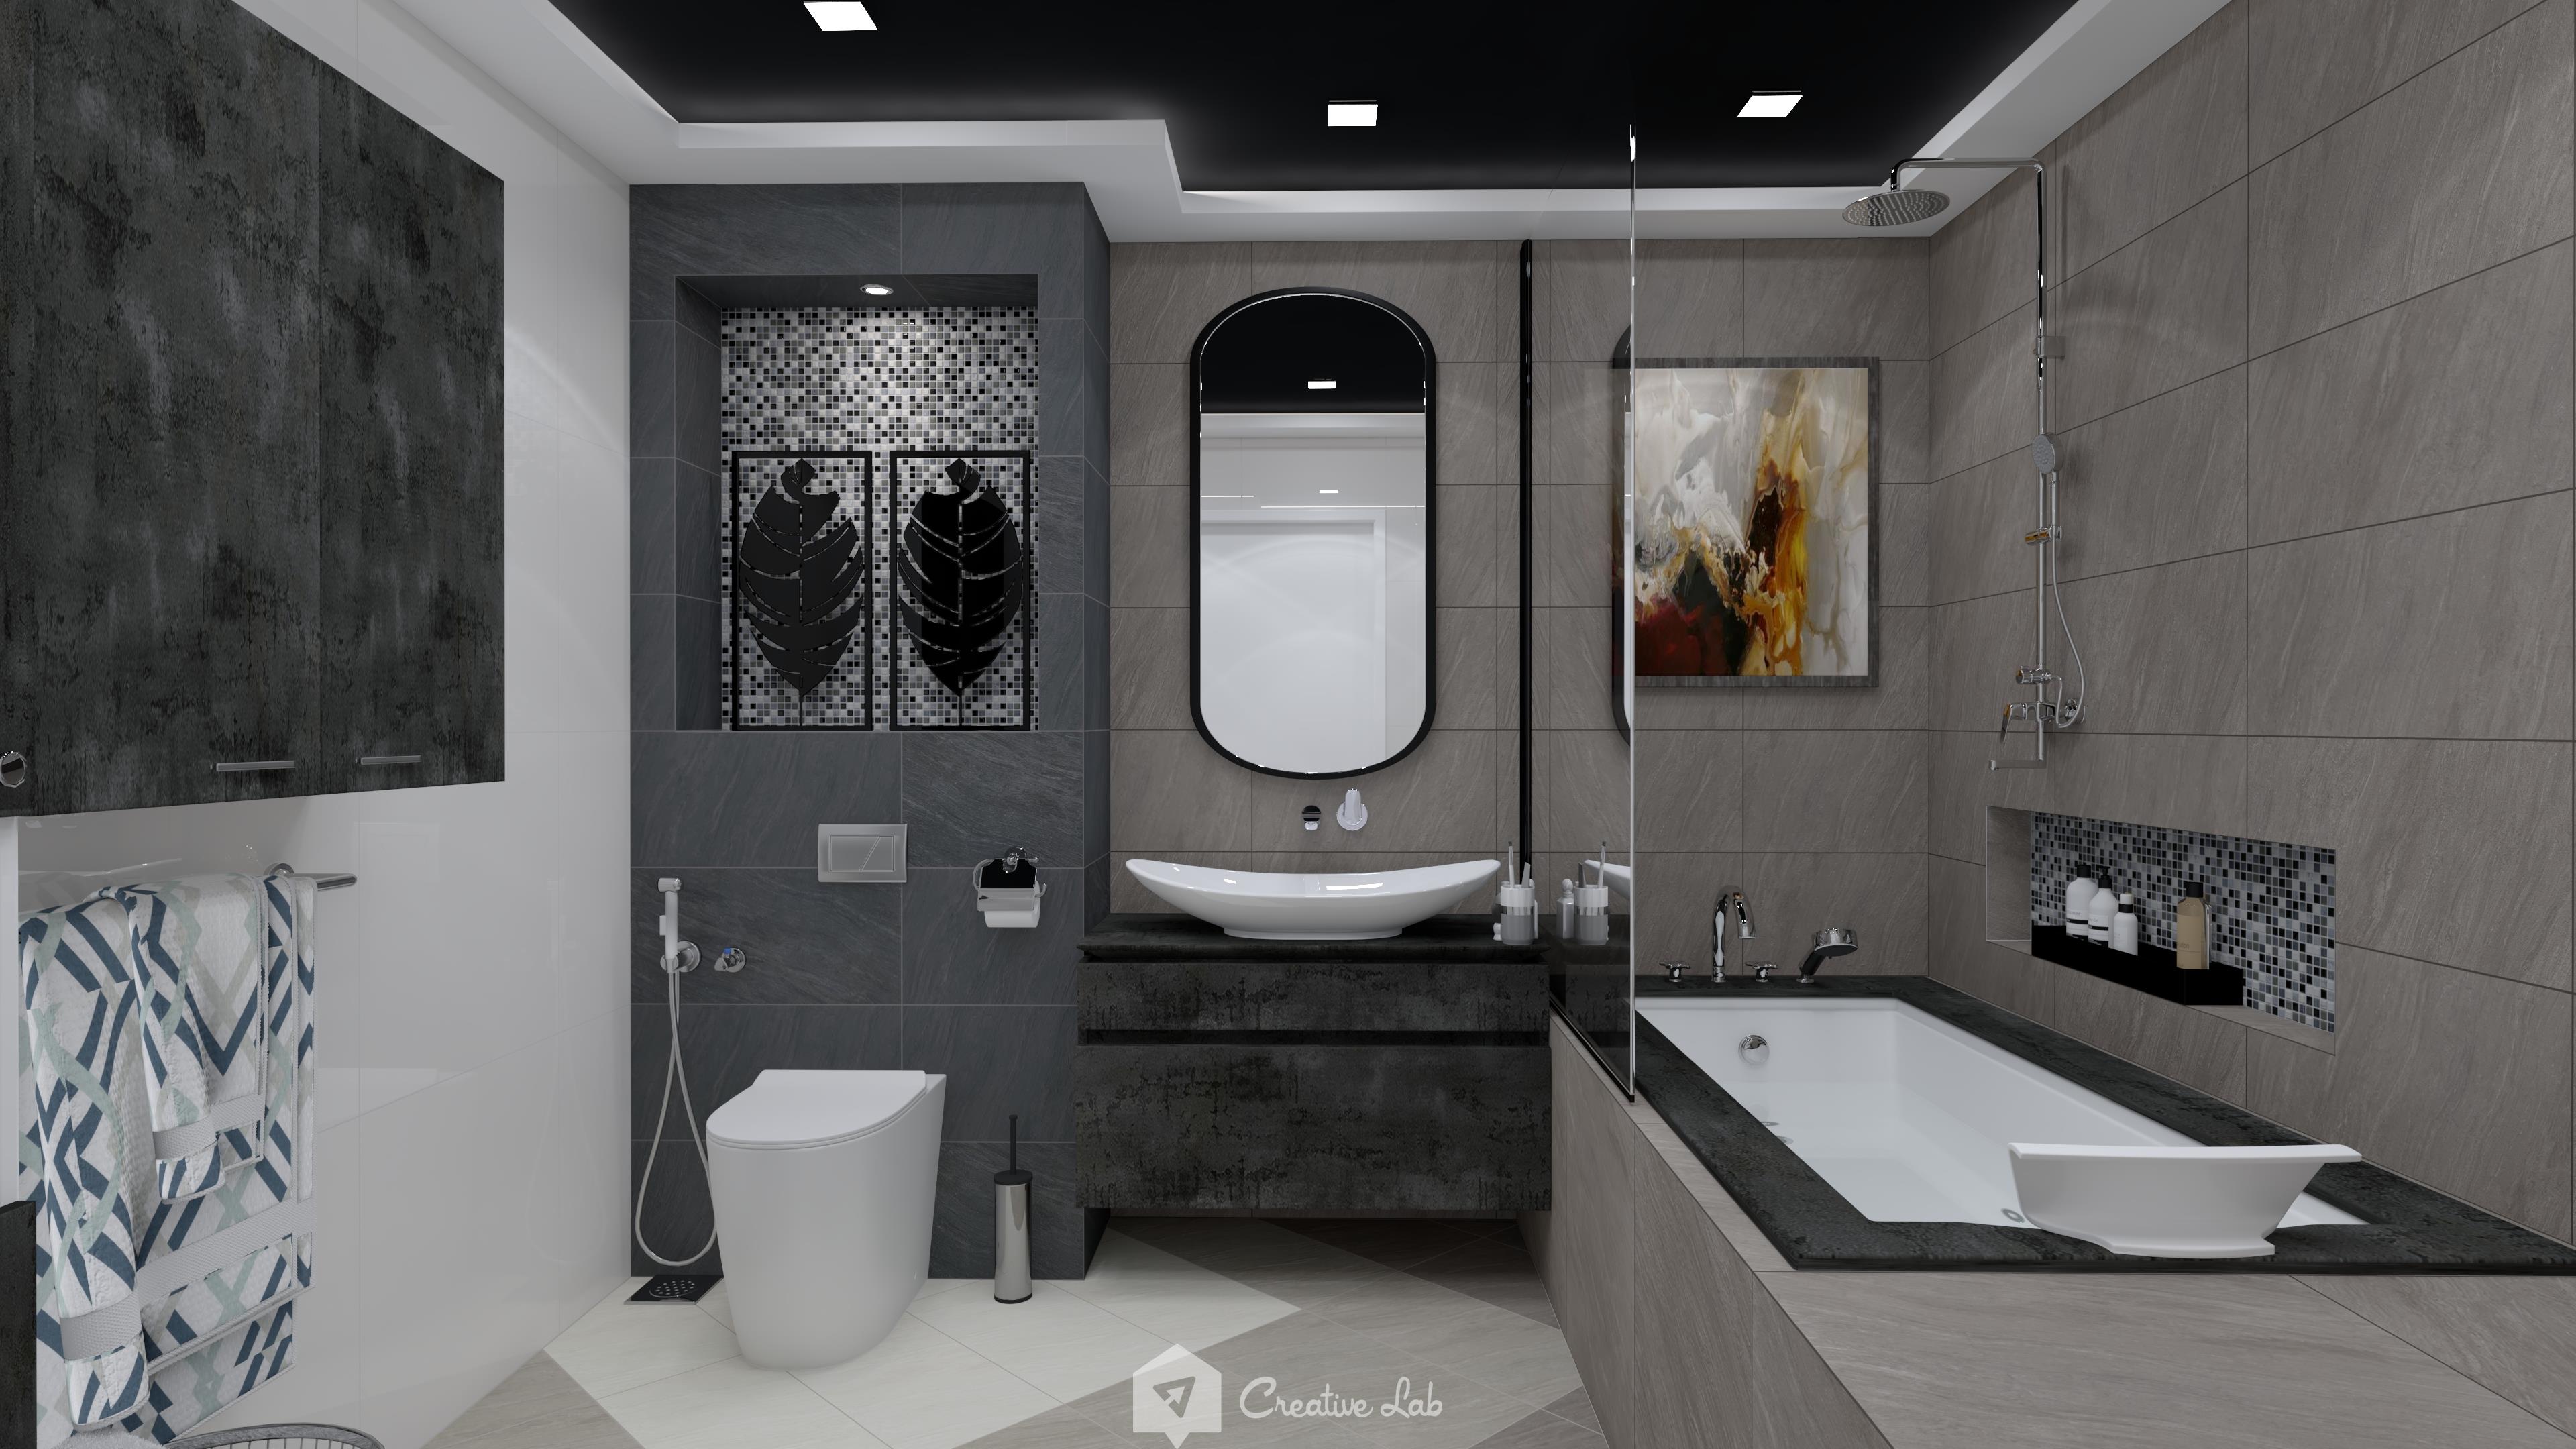 Ikhwan Bathroom Bathroom By Creative Lab Malaysia Niro Ceramic